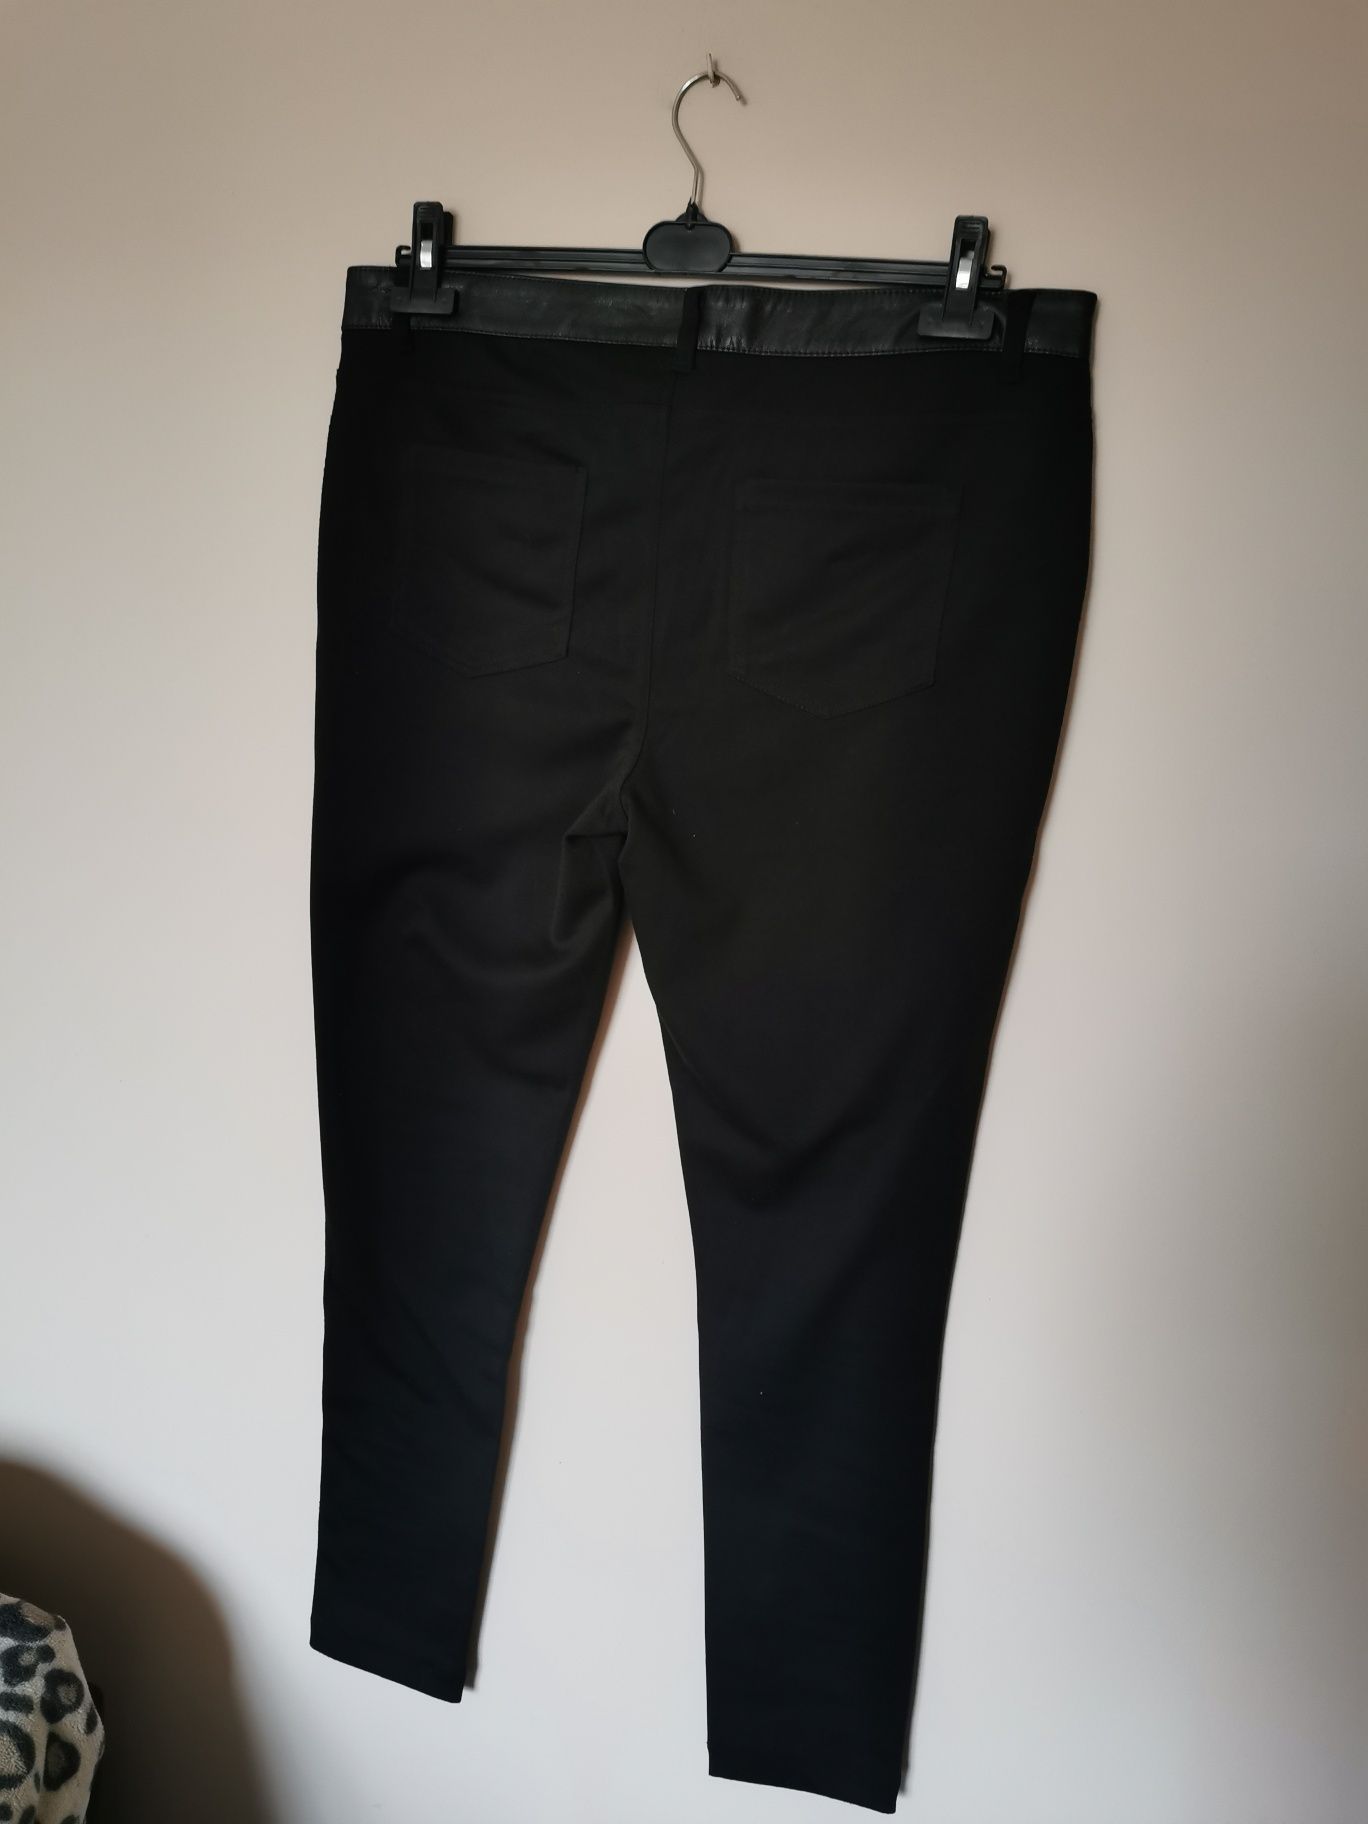 Spodnie woskowane skórzane eco skóra czarne wysoki stan 46 48 3XL 4XL